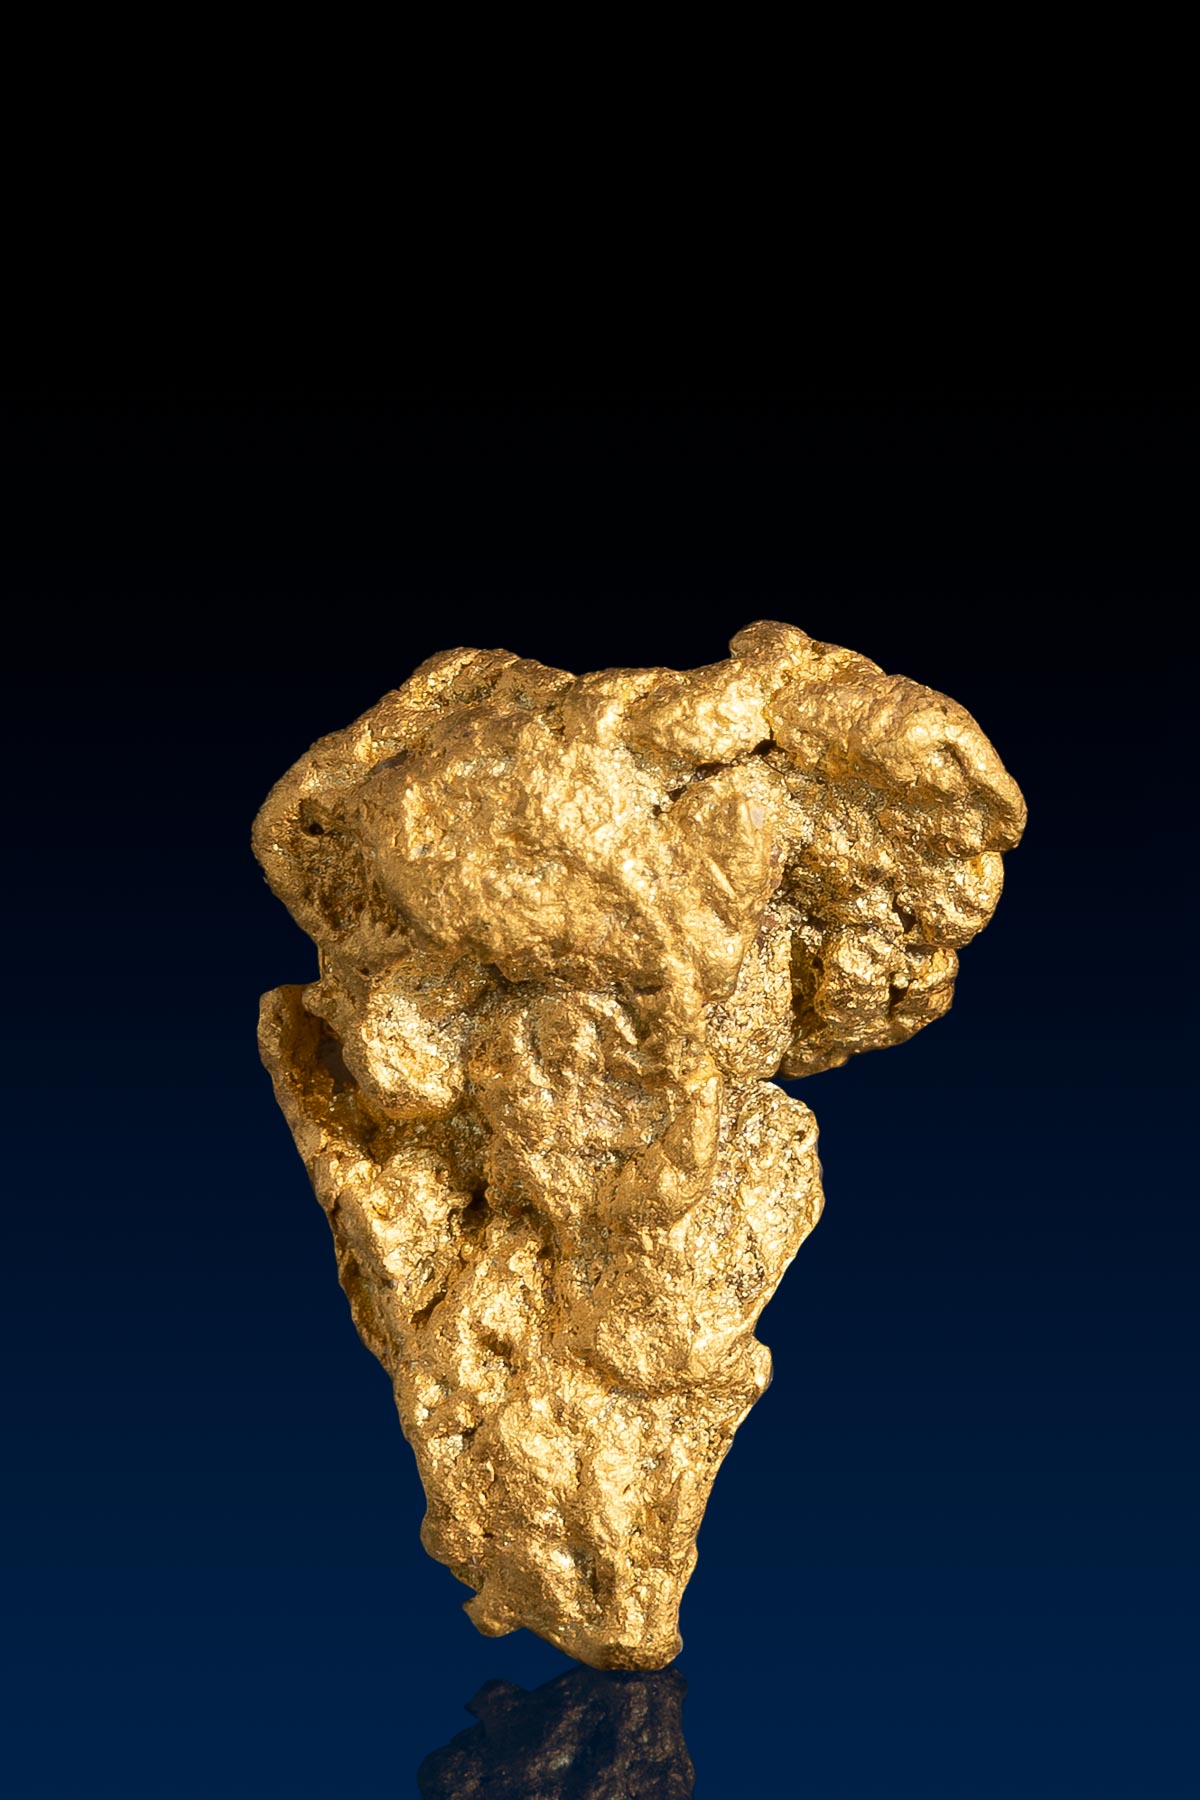 Arizona 7 Shaped Natural Gold Nugget - 2.29 grams